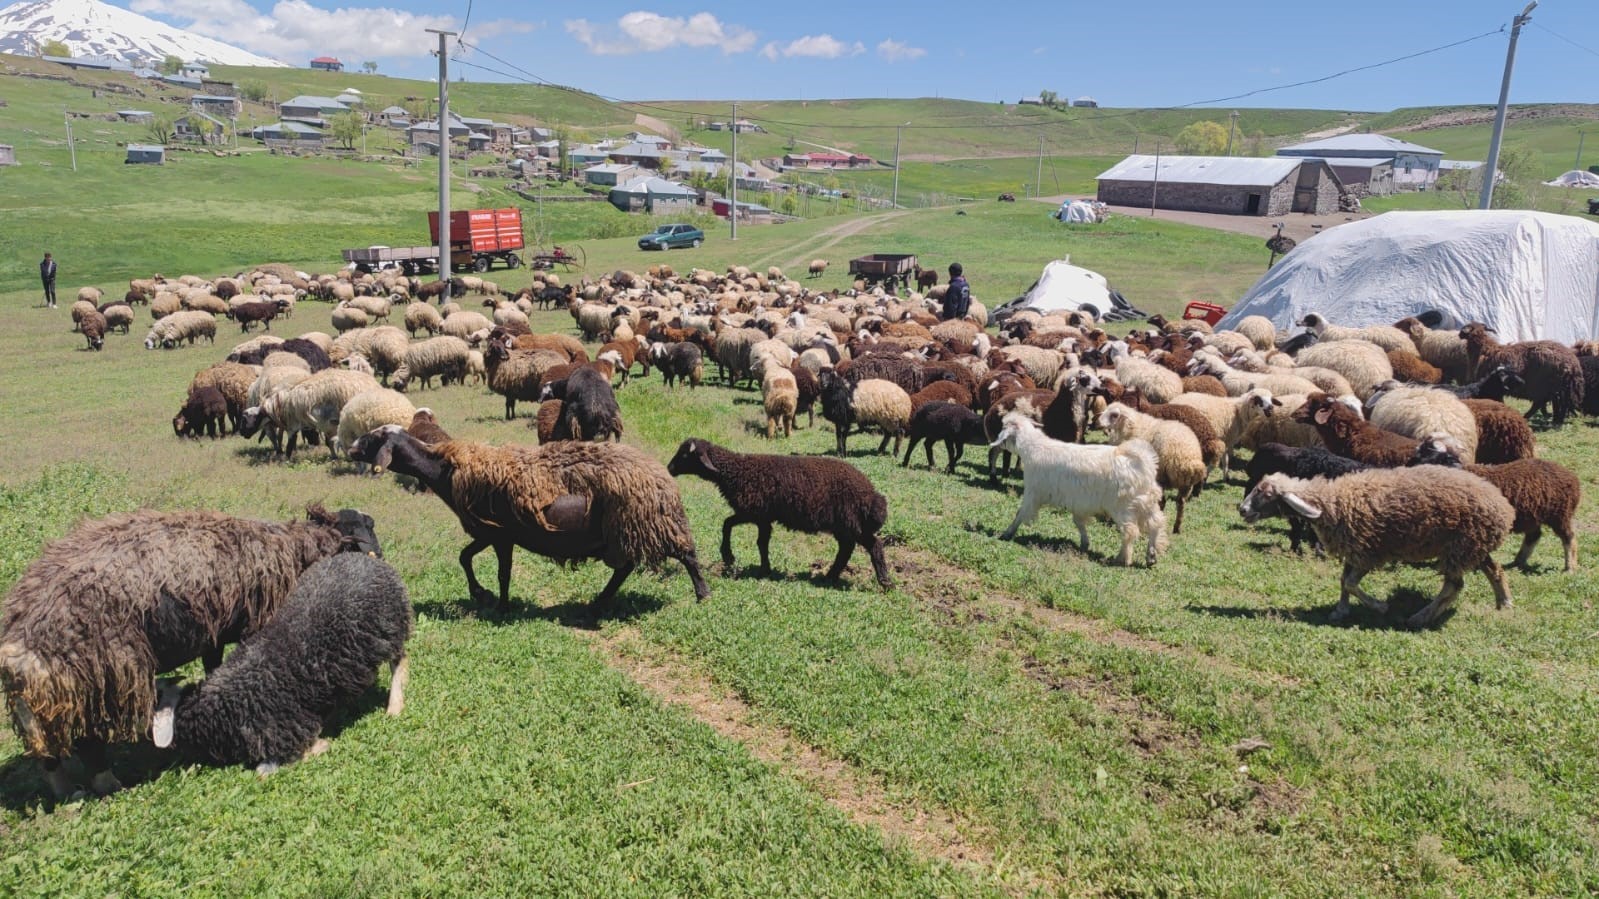 Koyunların kuzularla buluşması görsel şölen sunuyor